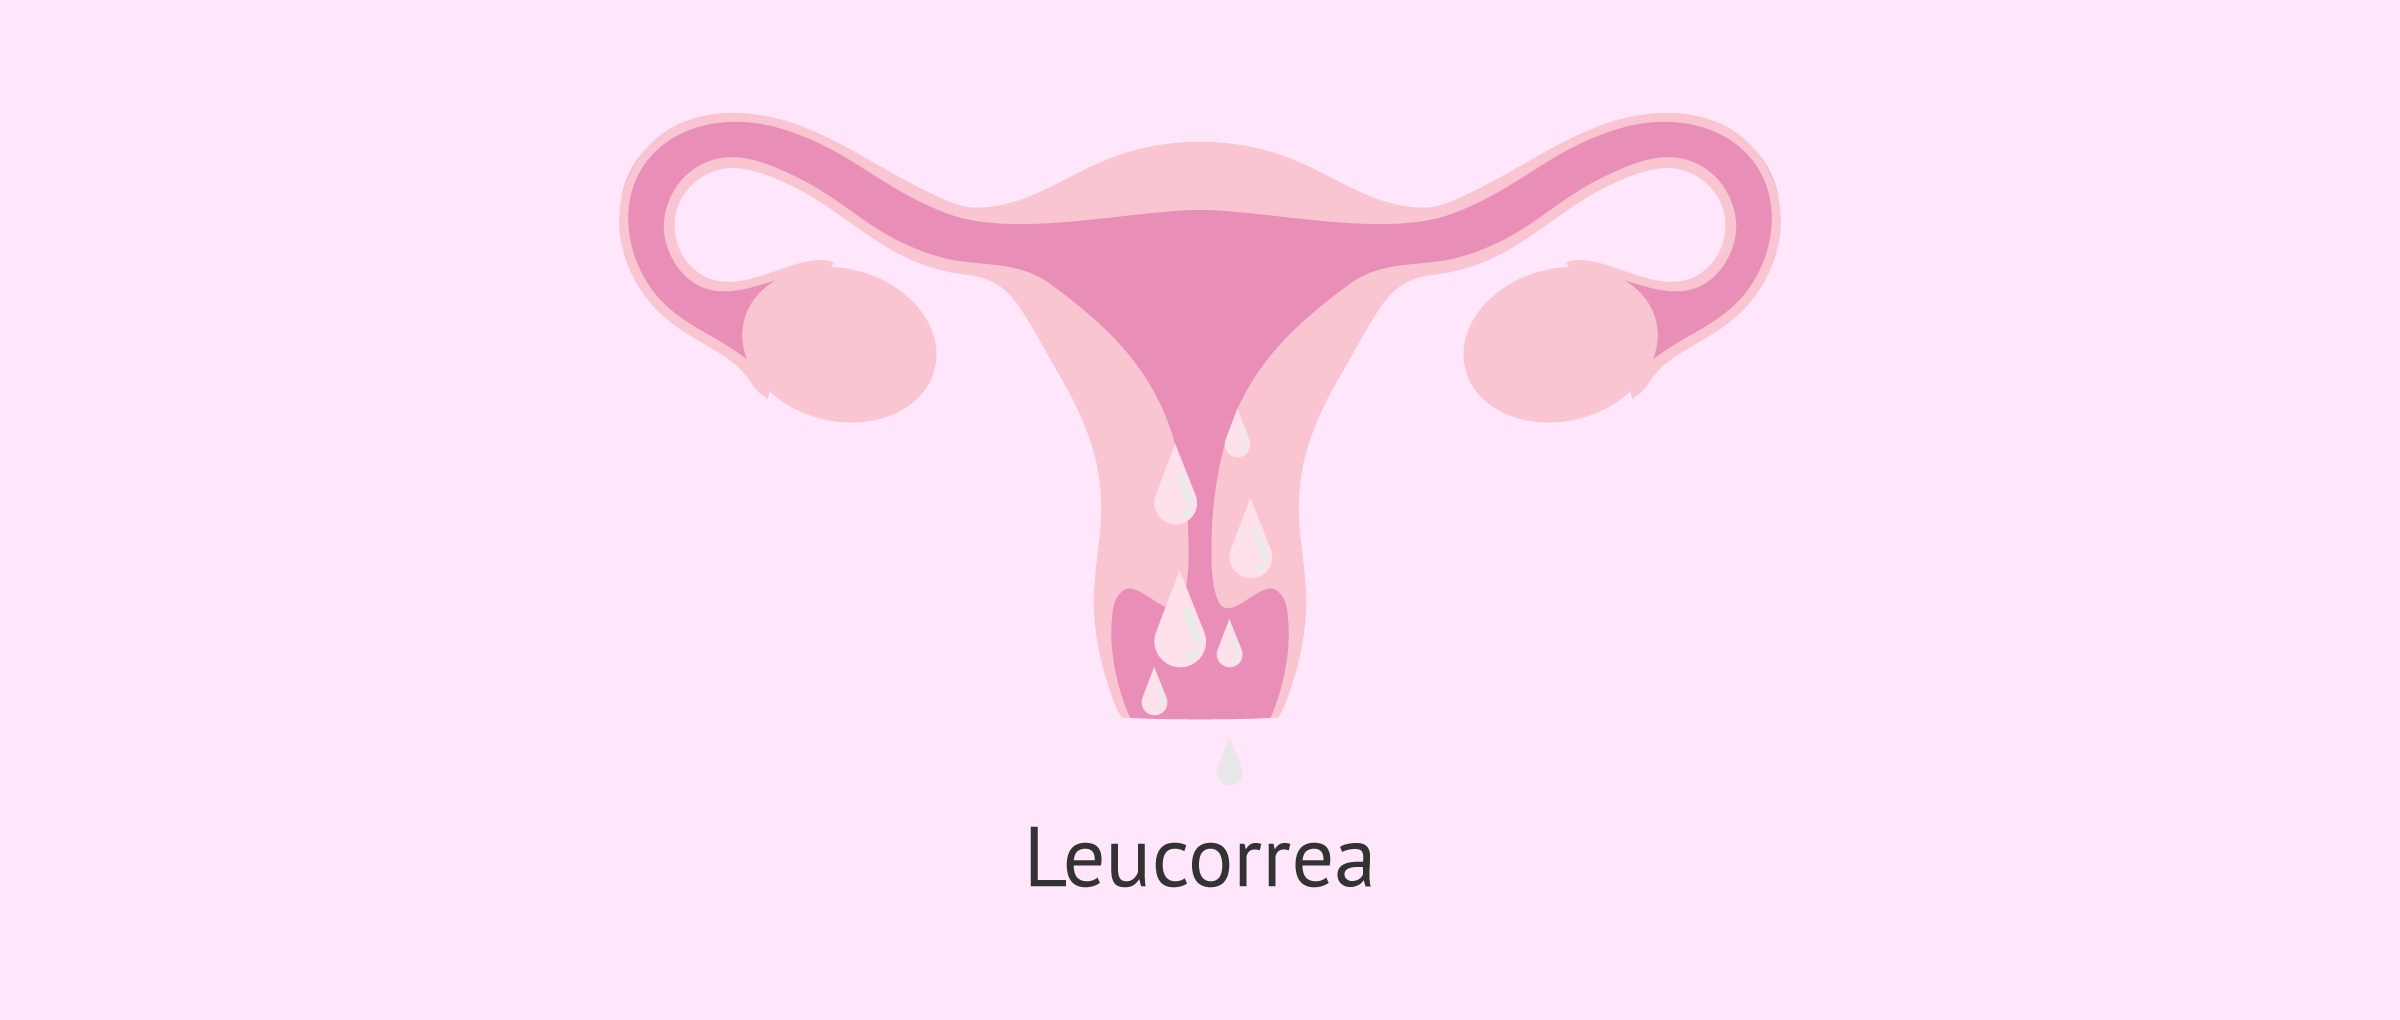 ¿Qué significa leucorrea?